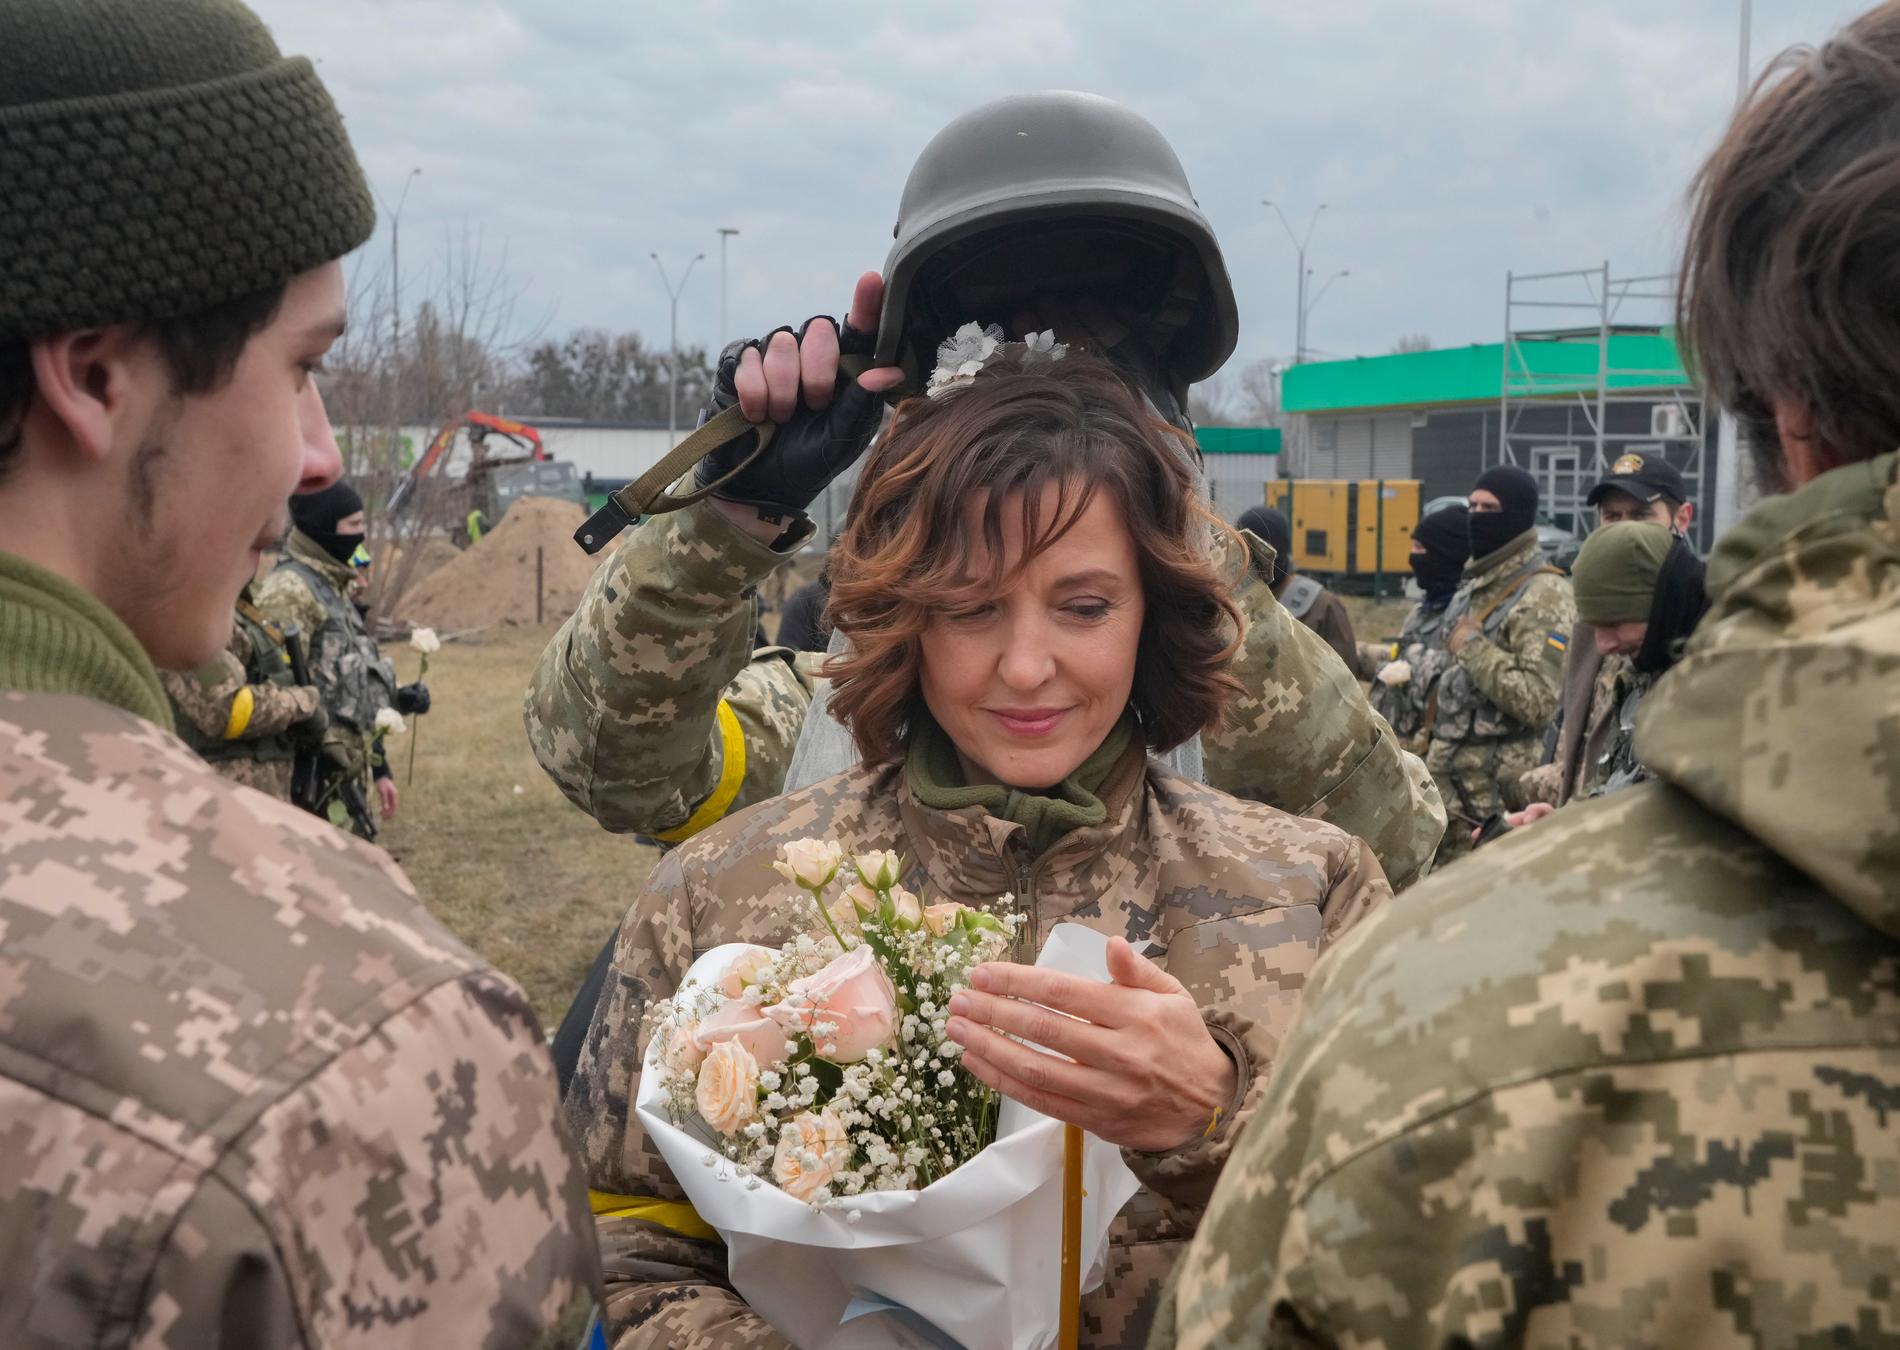 En soldat höll en hjälm över huvudet på bruden, som en bröllopstiara.